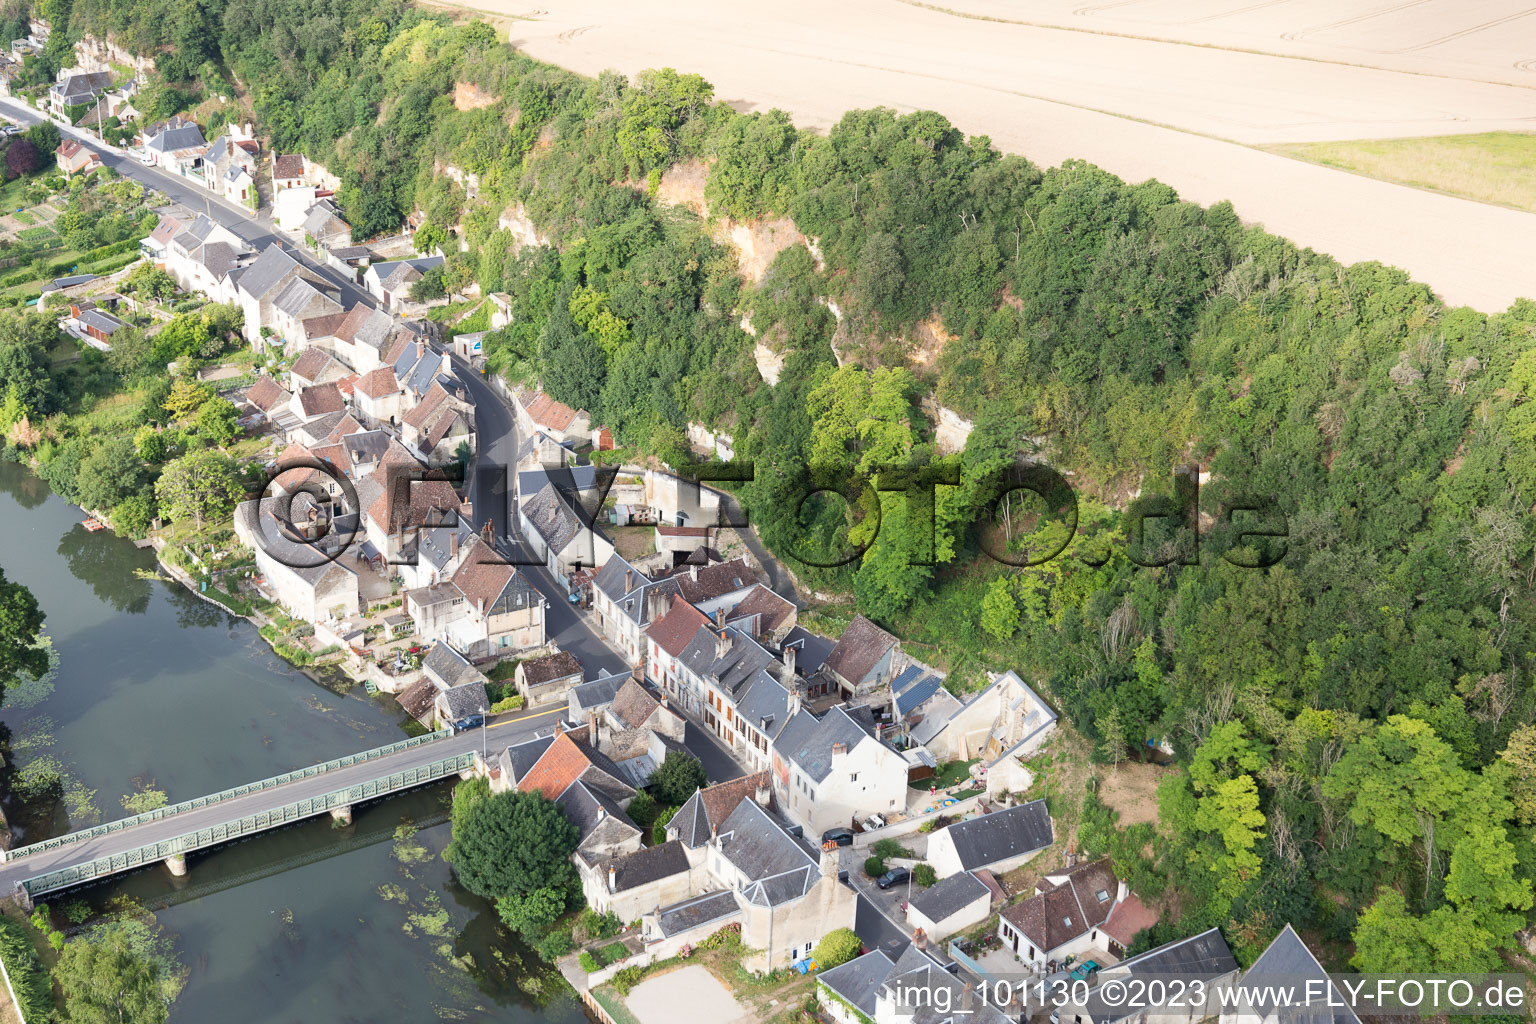 Saint-Rimay dans le département Loir et Cher, France vu d'un drone